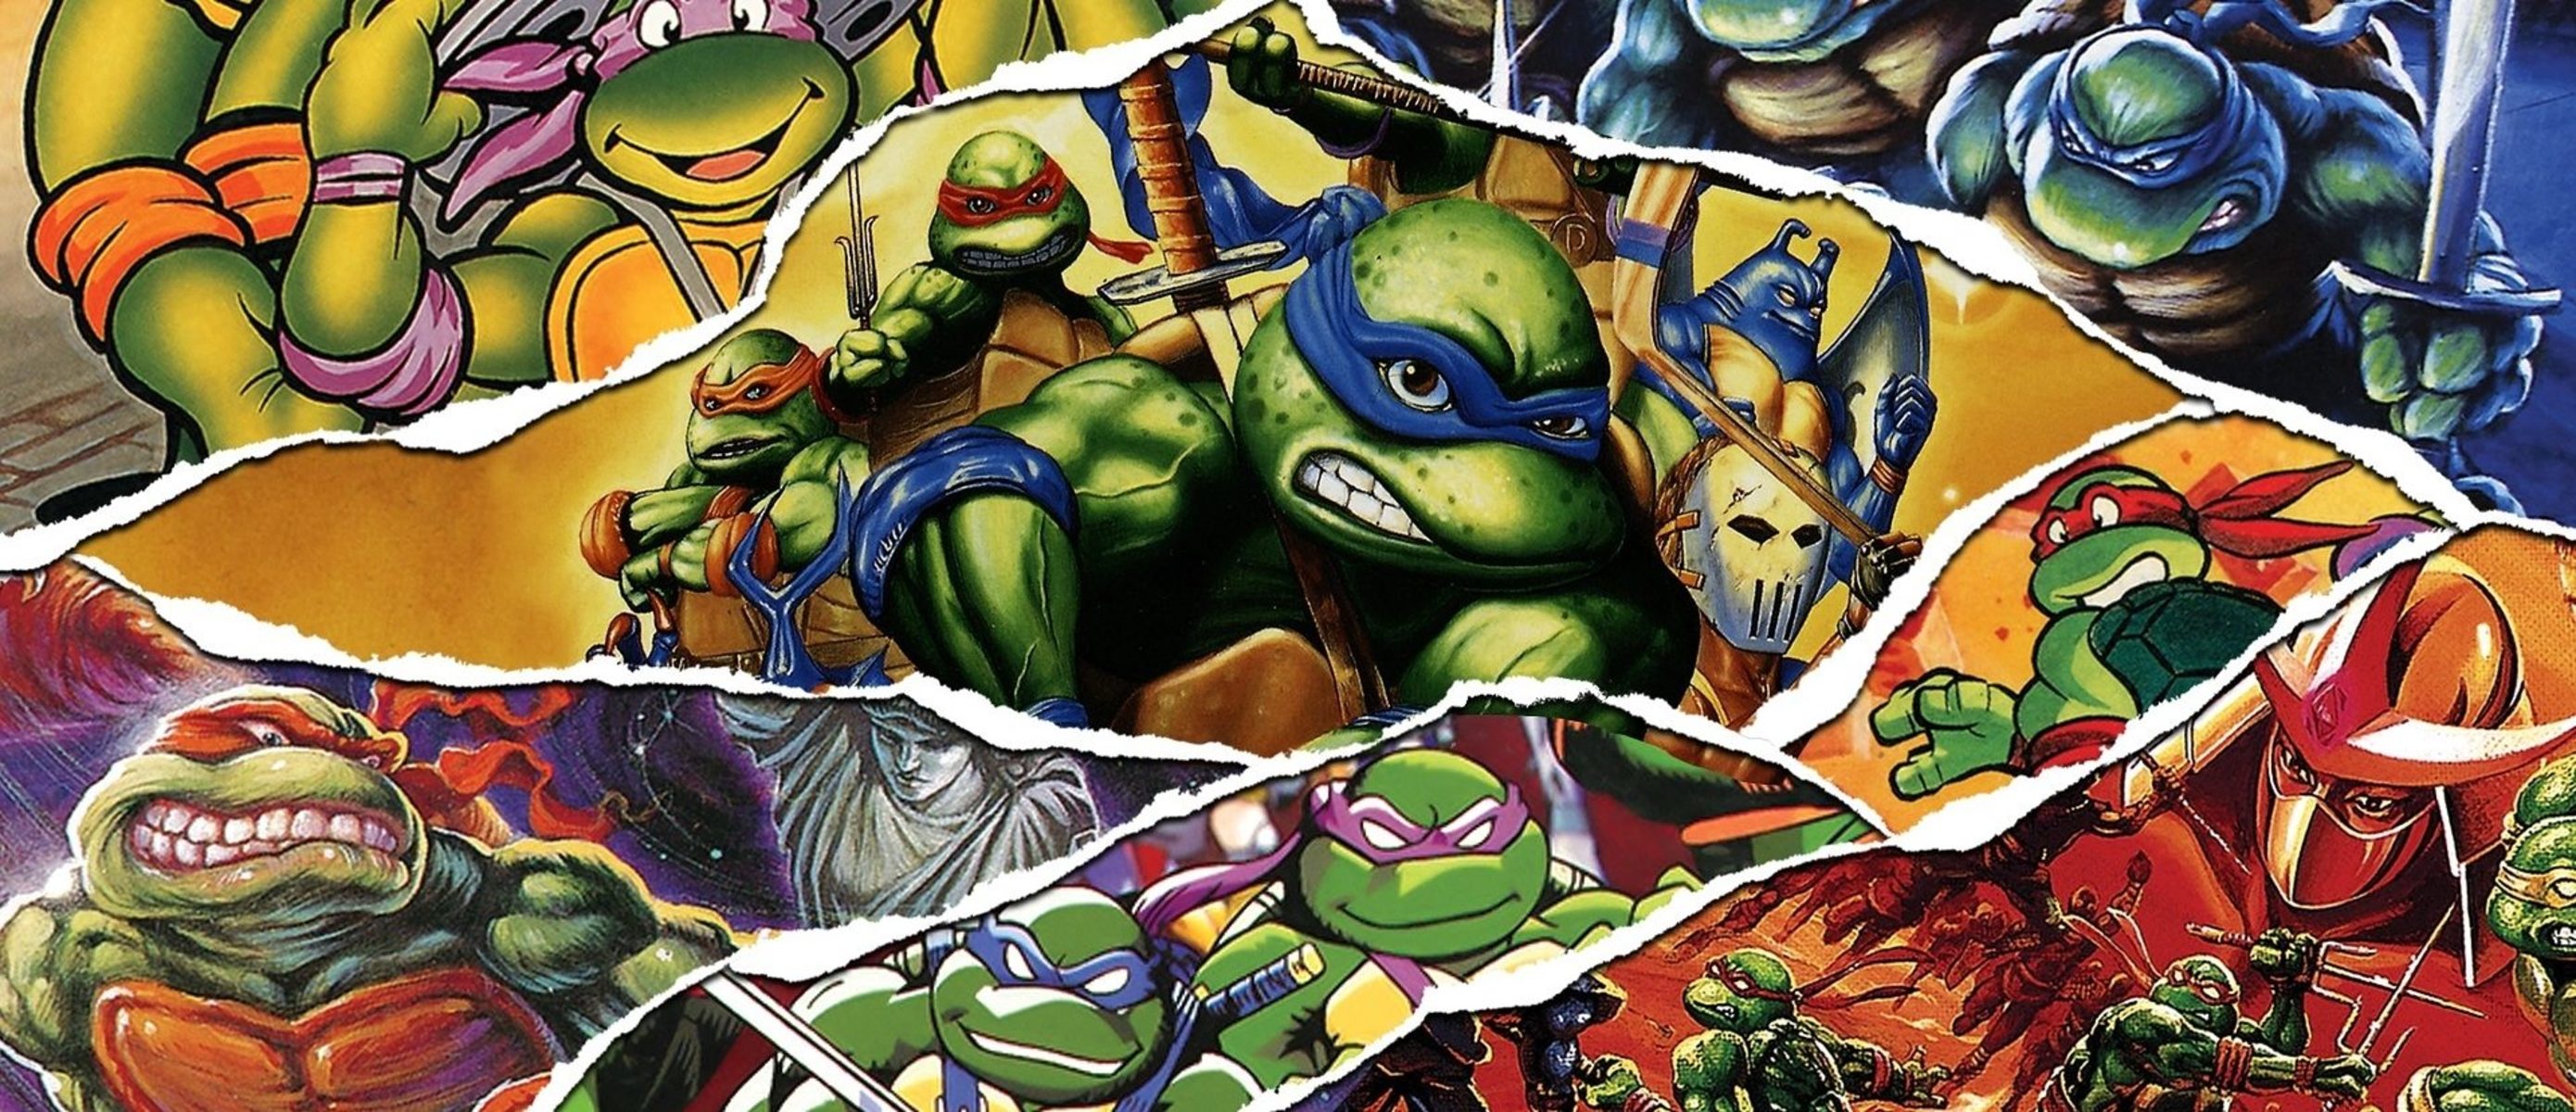 Turtles cowabunga collection. TMNT Cowabunga collection. Поклонники черепашек ниндзя. TMNT: the Cowabunga collection на Nintendo Switch. Teenage Mutant Ninja Turtles: the Cowabunga collection.